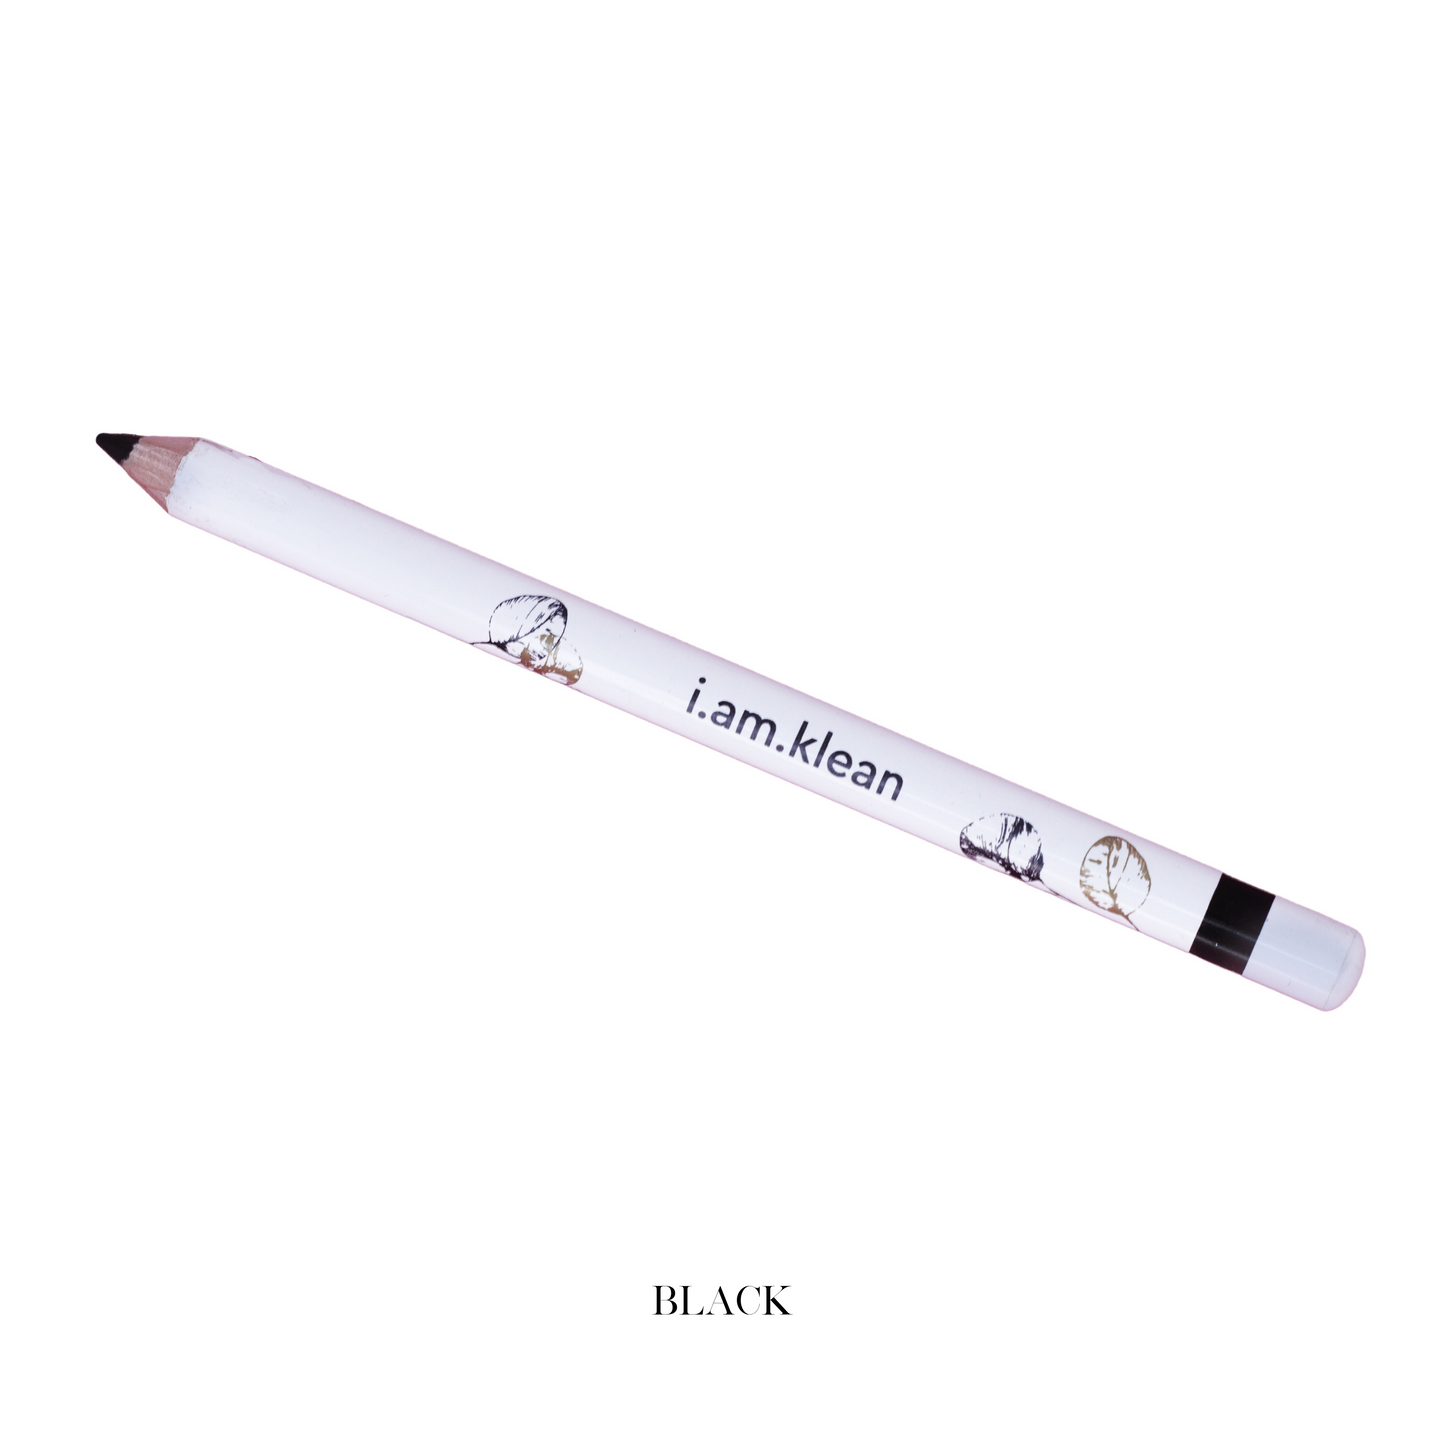 Klean Eyepencil - The blackest black